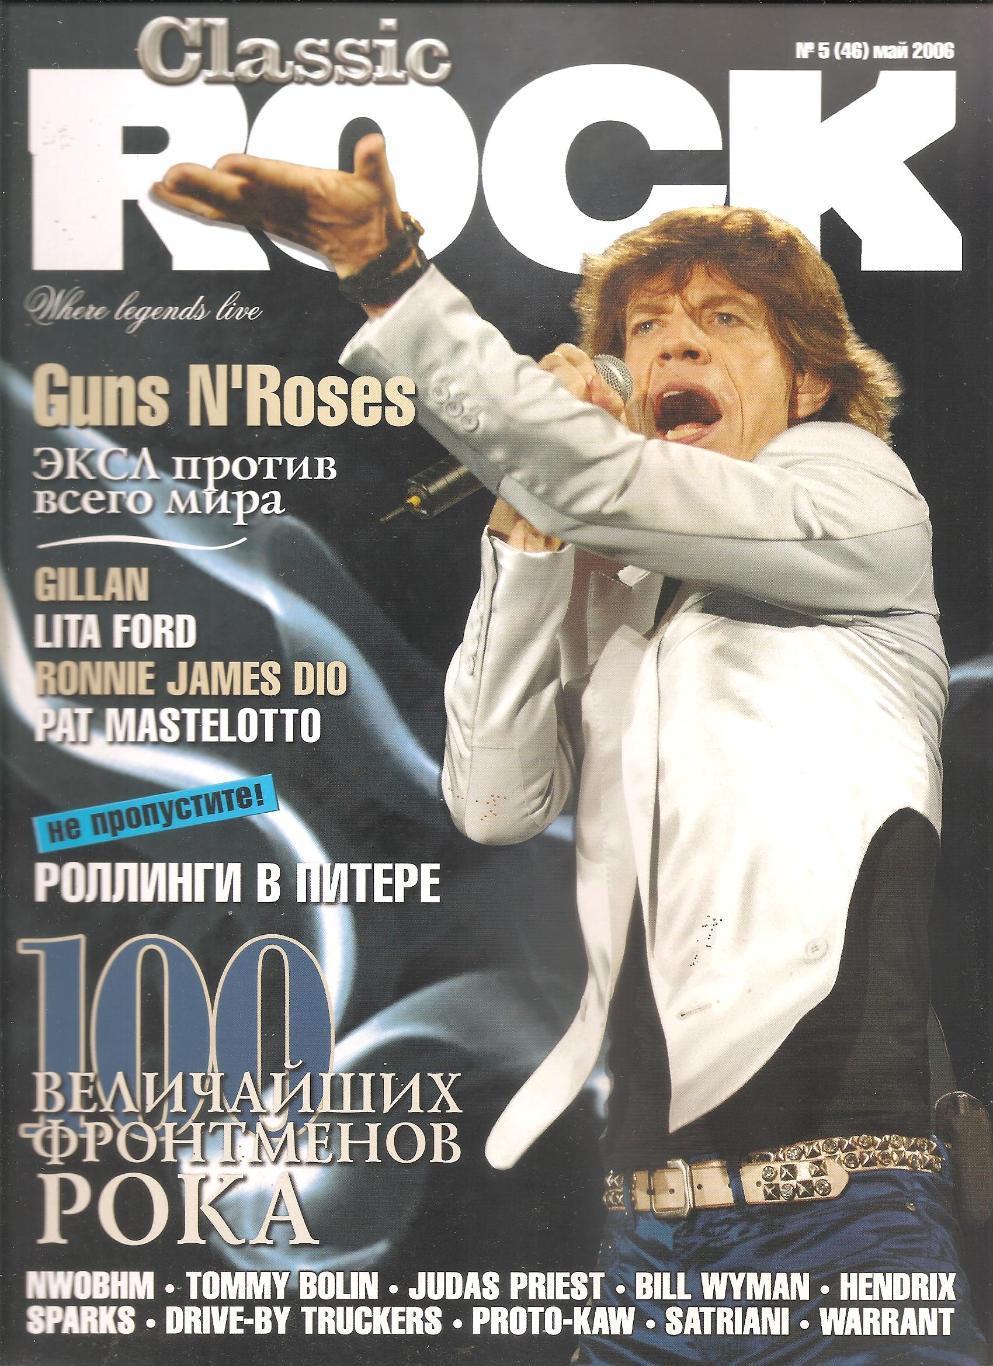 Журнал CLASSIC ROCK # 5 (46) май 2006